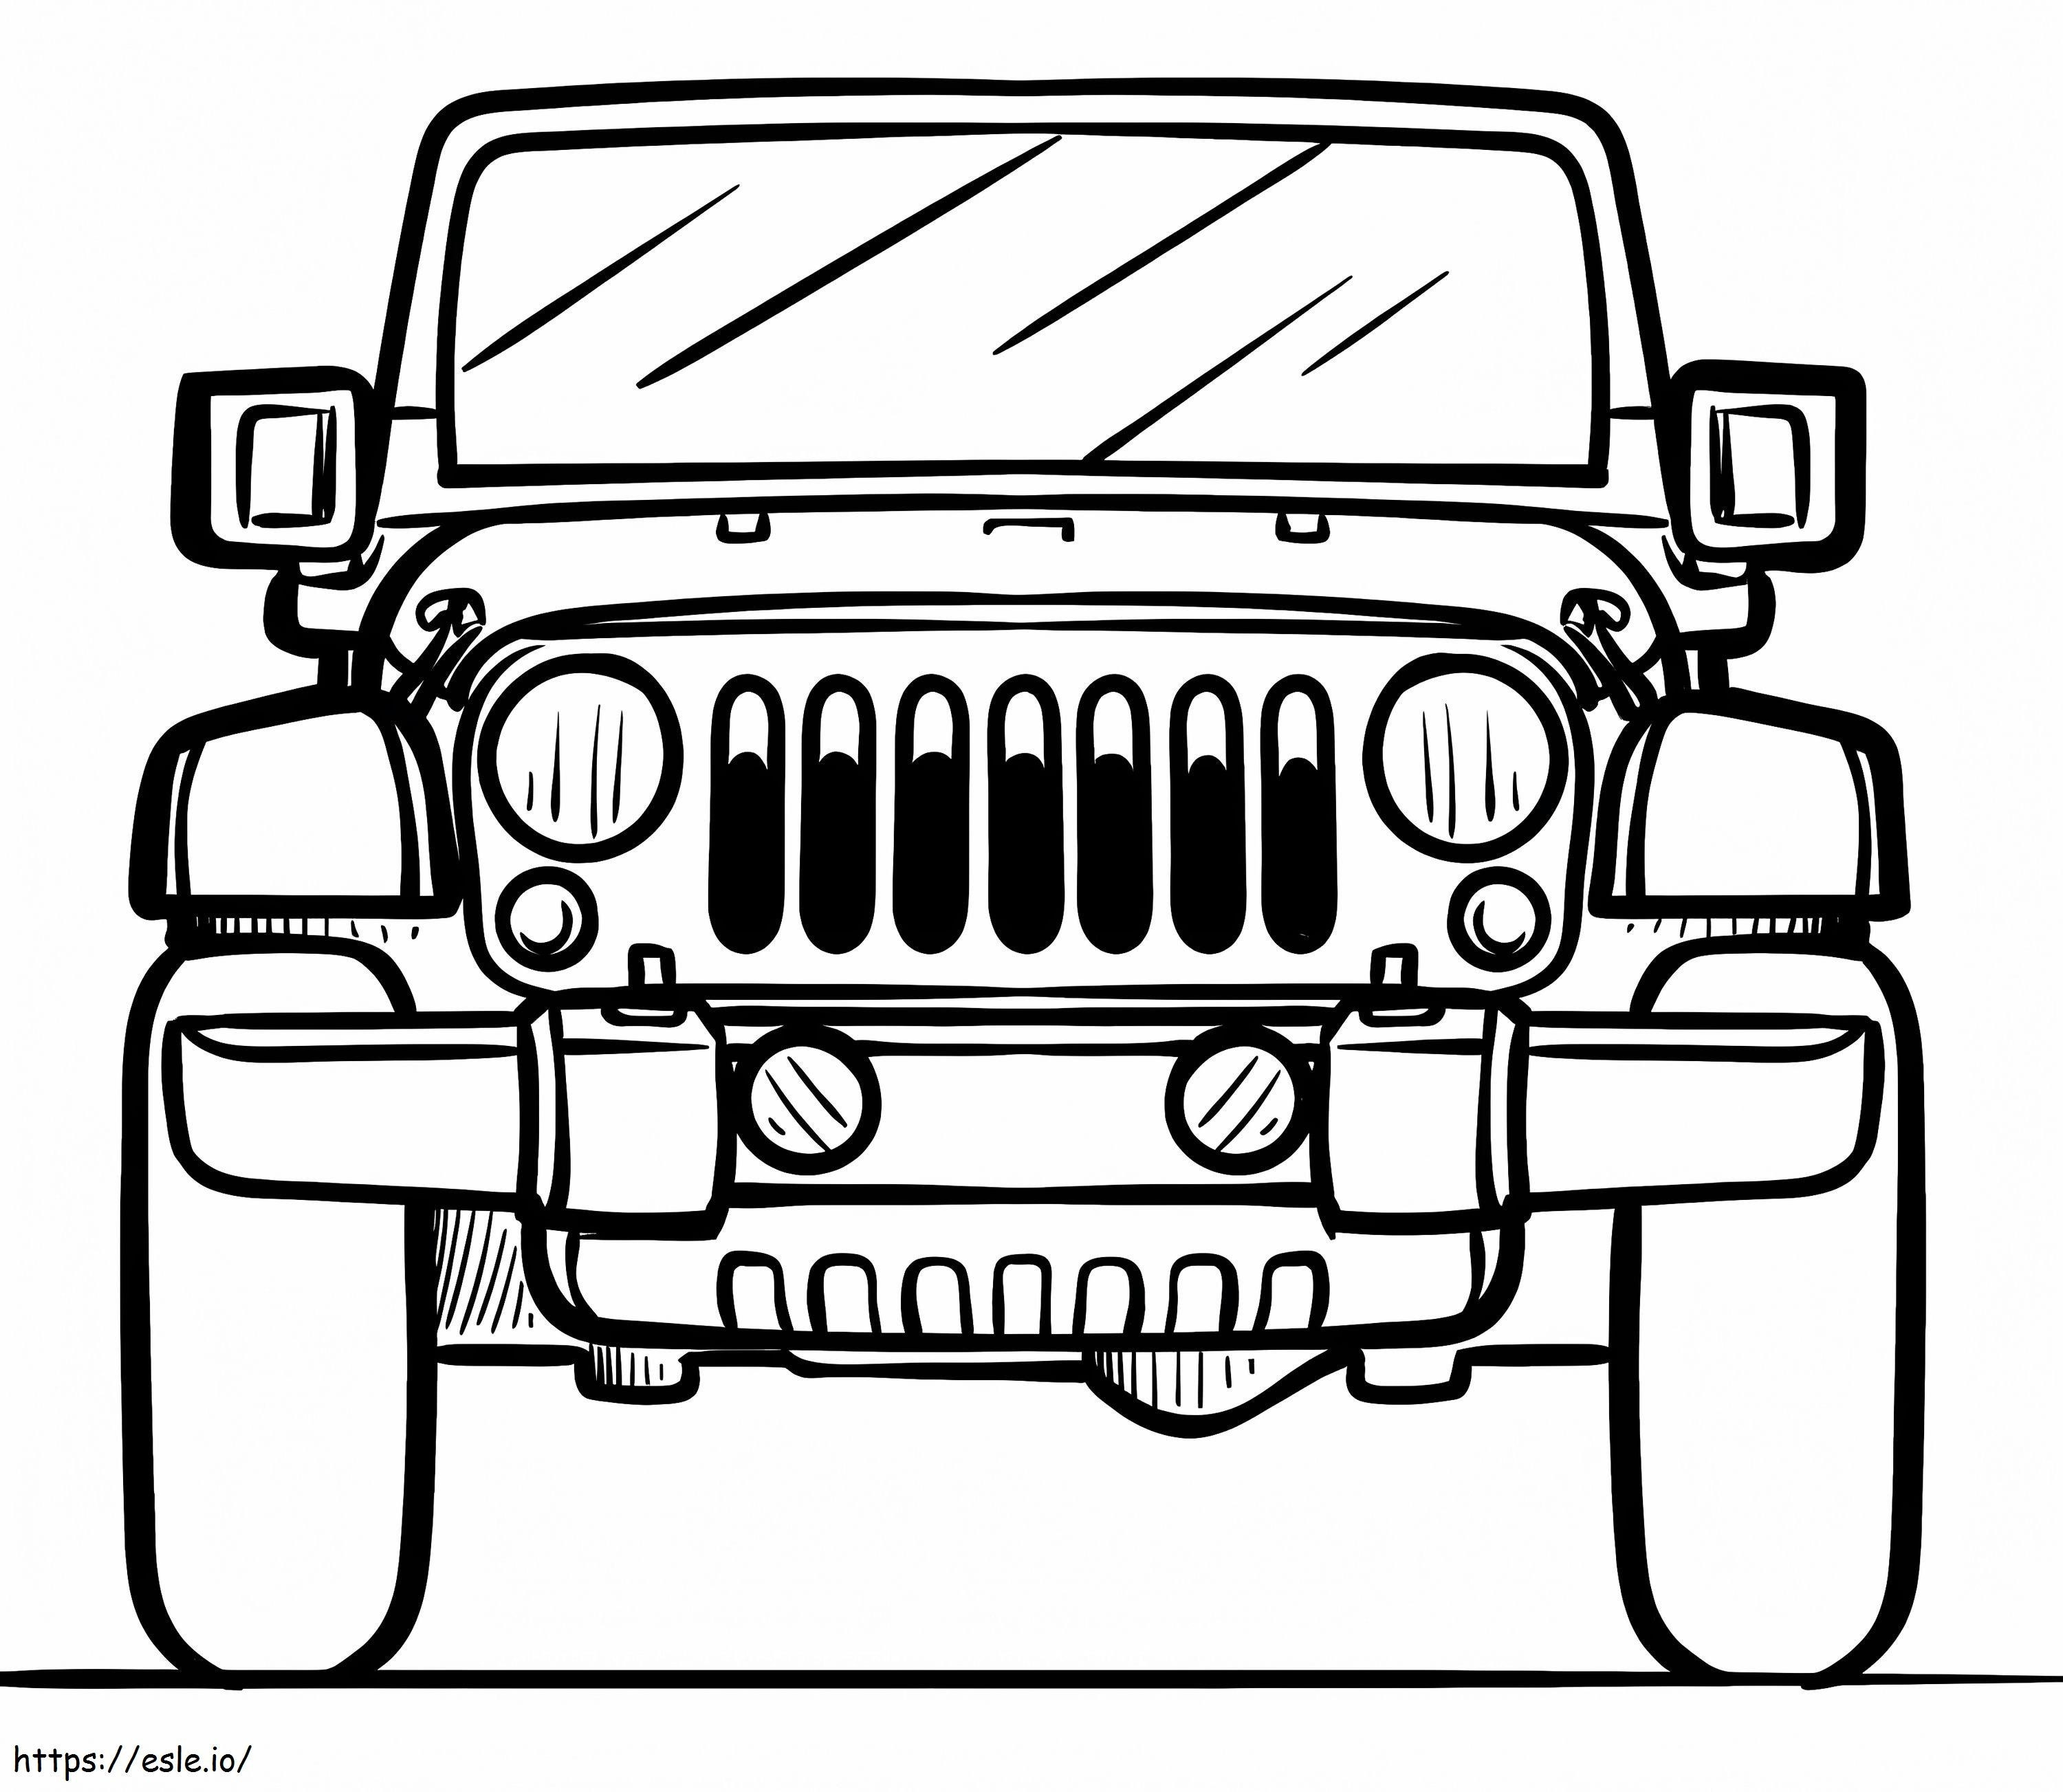 Jeep gratuita da colorare